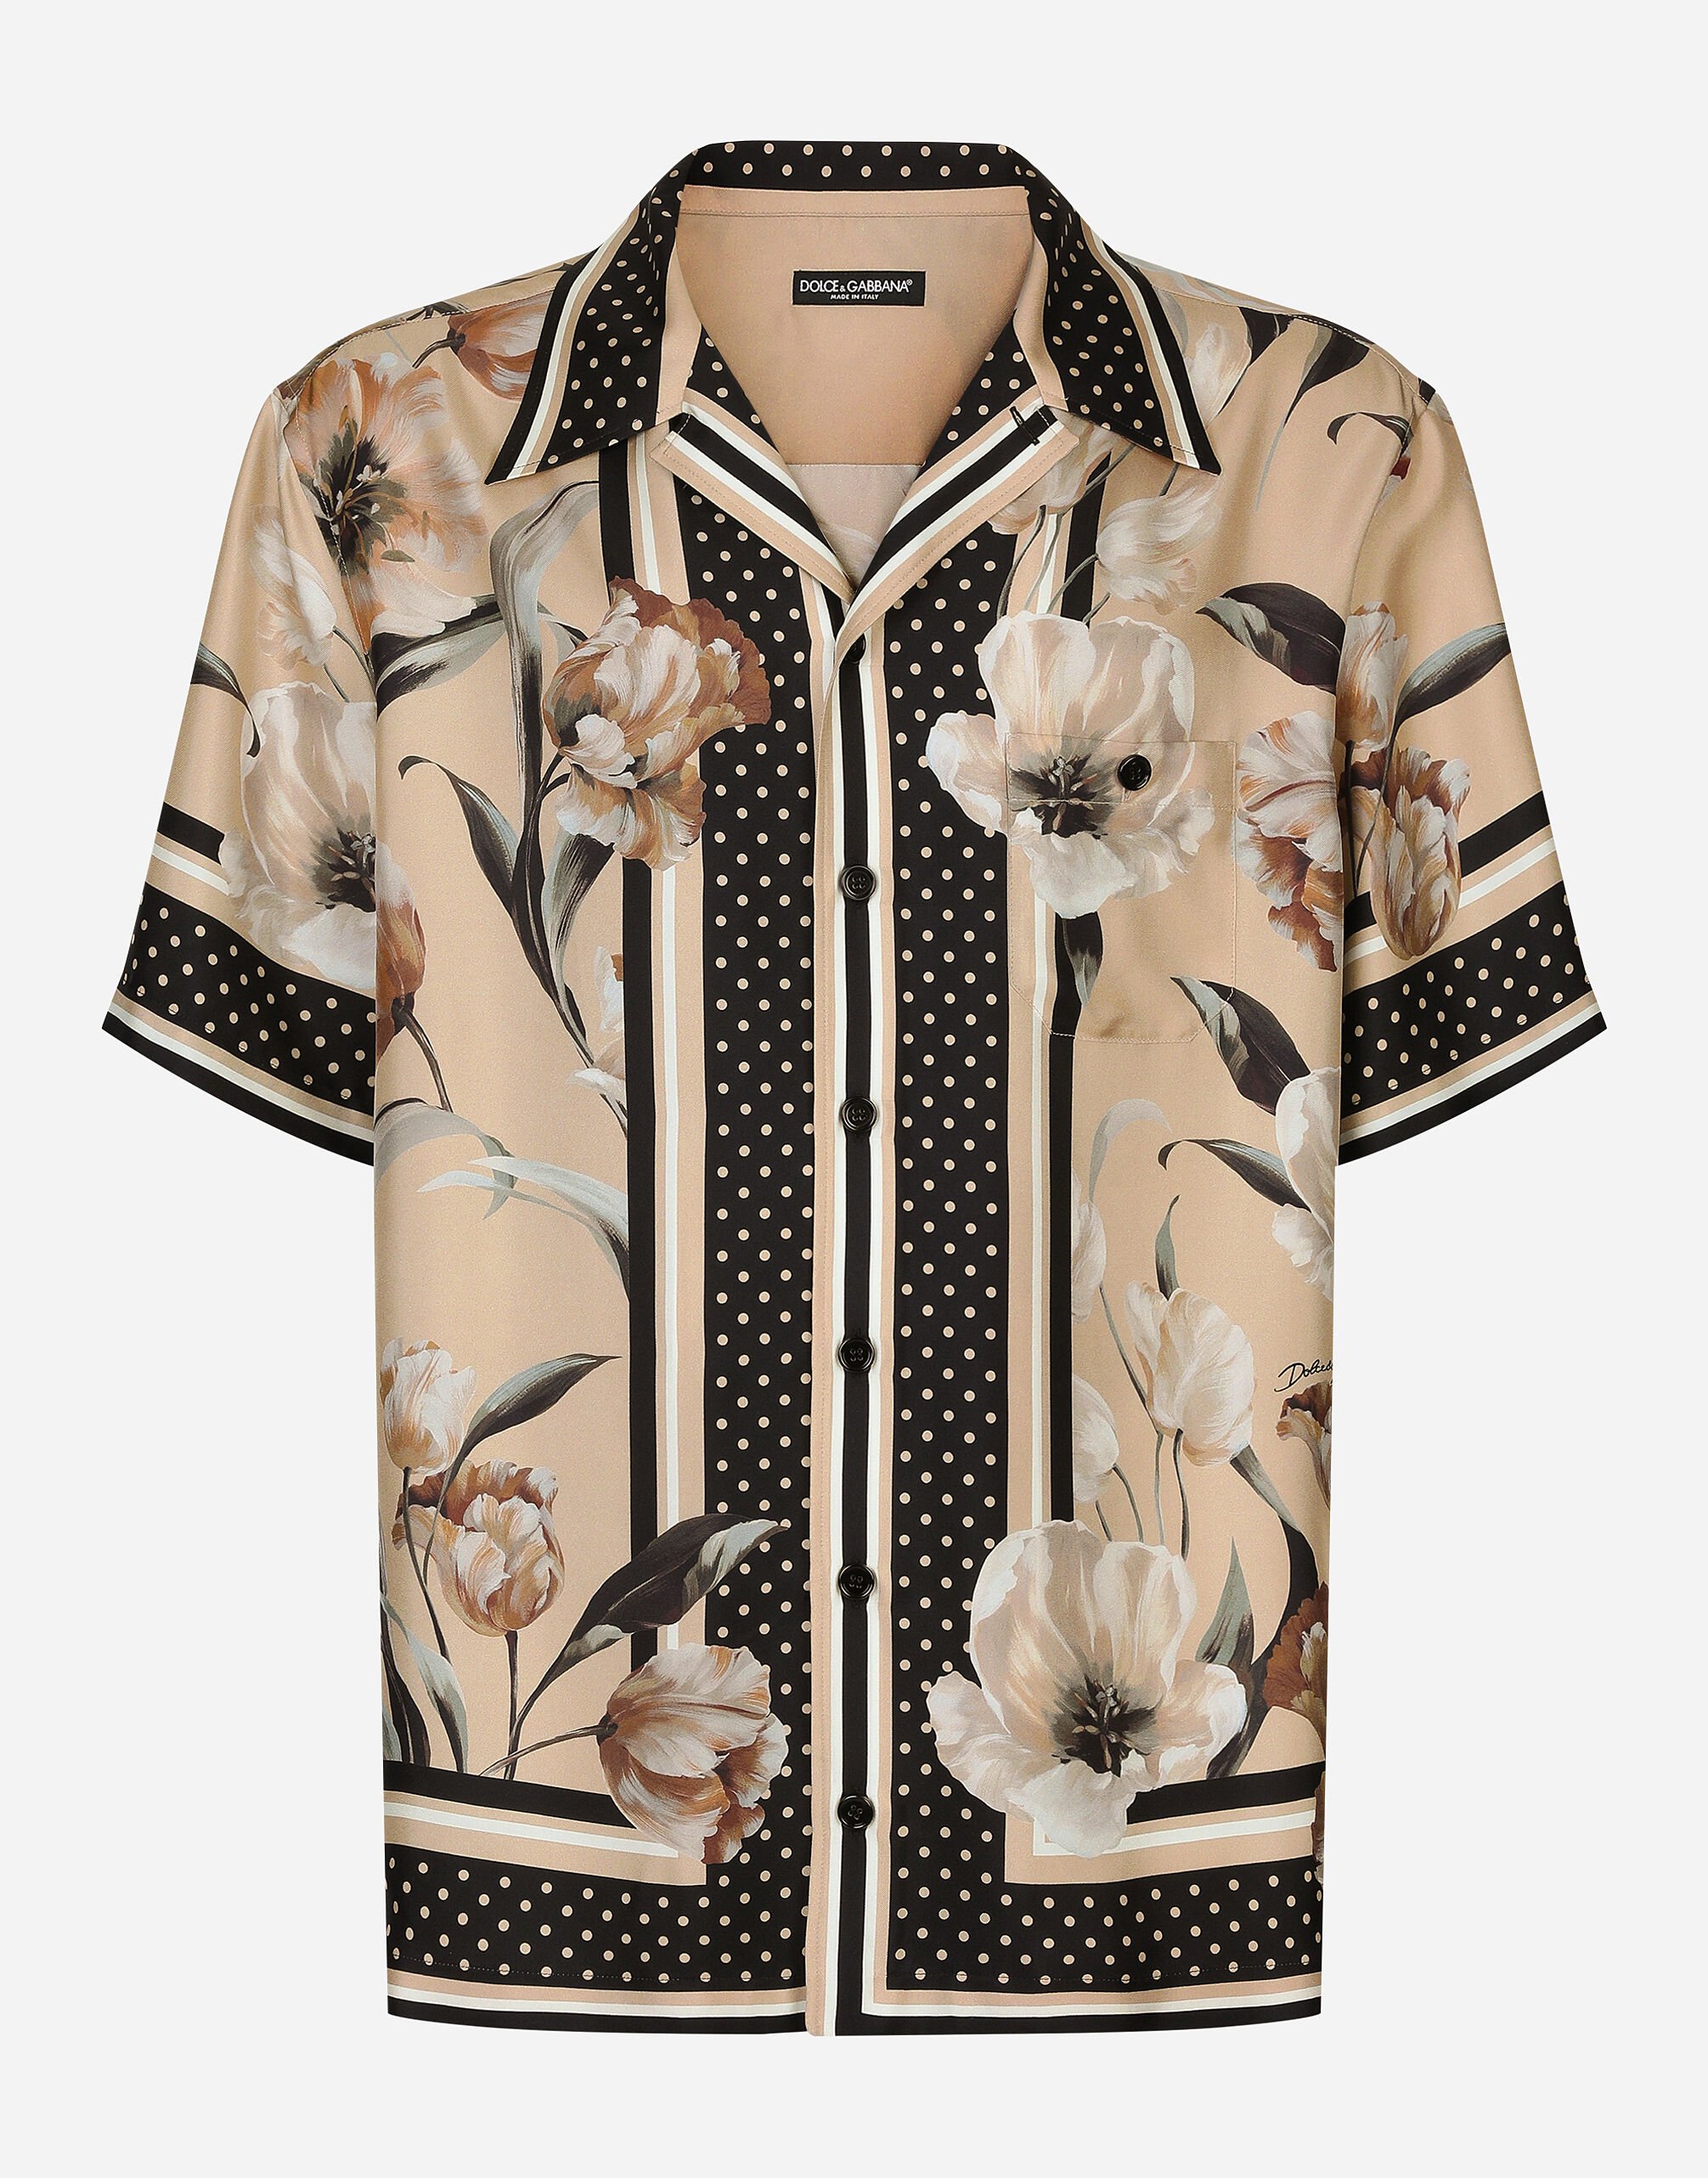 Dolce & Gabbana Camisa Hawaii en sarga de seda con estampado de flores Imprima G9AZDTFS6N5